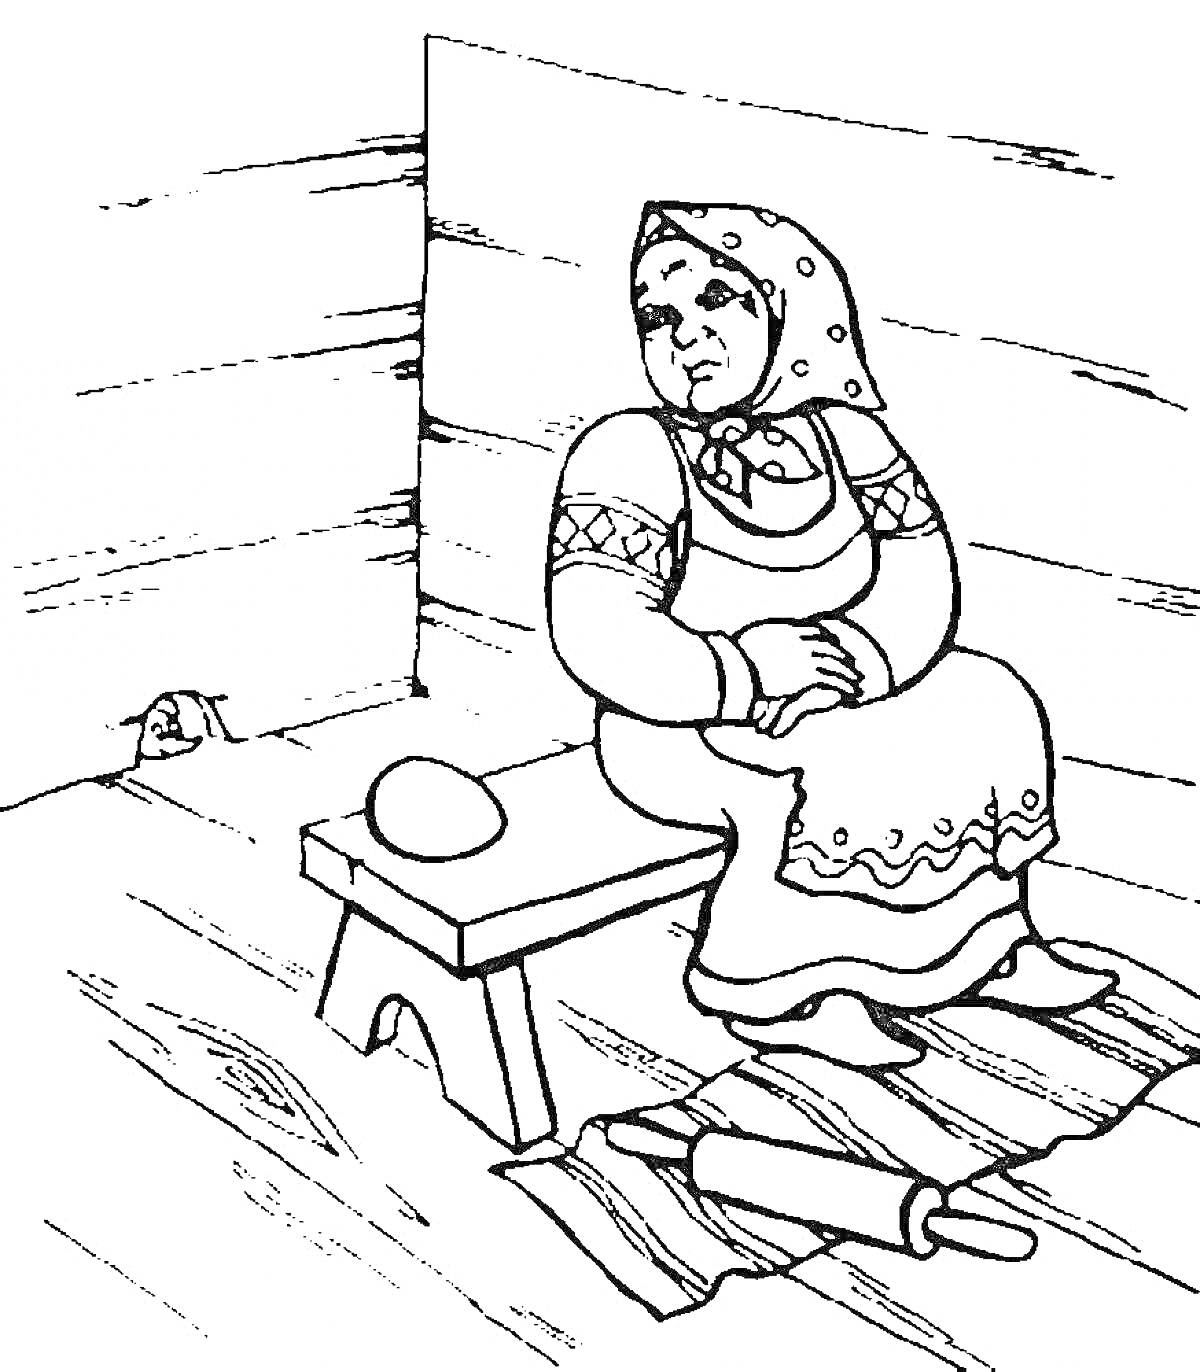 Бабушка на скамейке в русской избе с яйцом и скалкой на полу